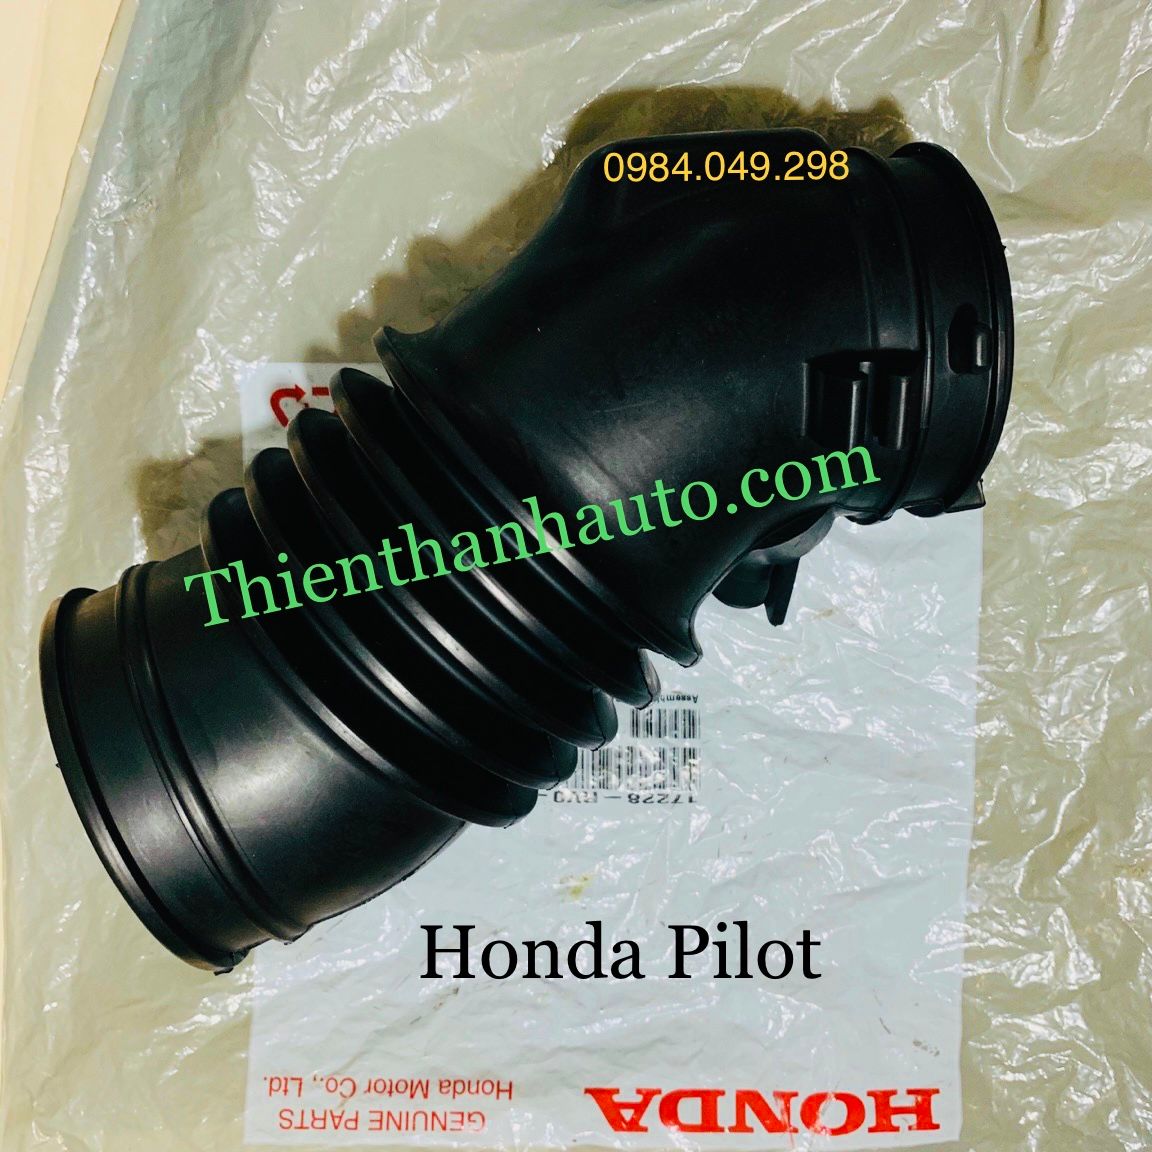 Cao su cổ hút - Ống gió bầu le Honda Pilot chính hãng - Thienthanhauto.com